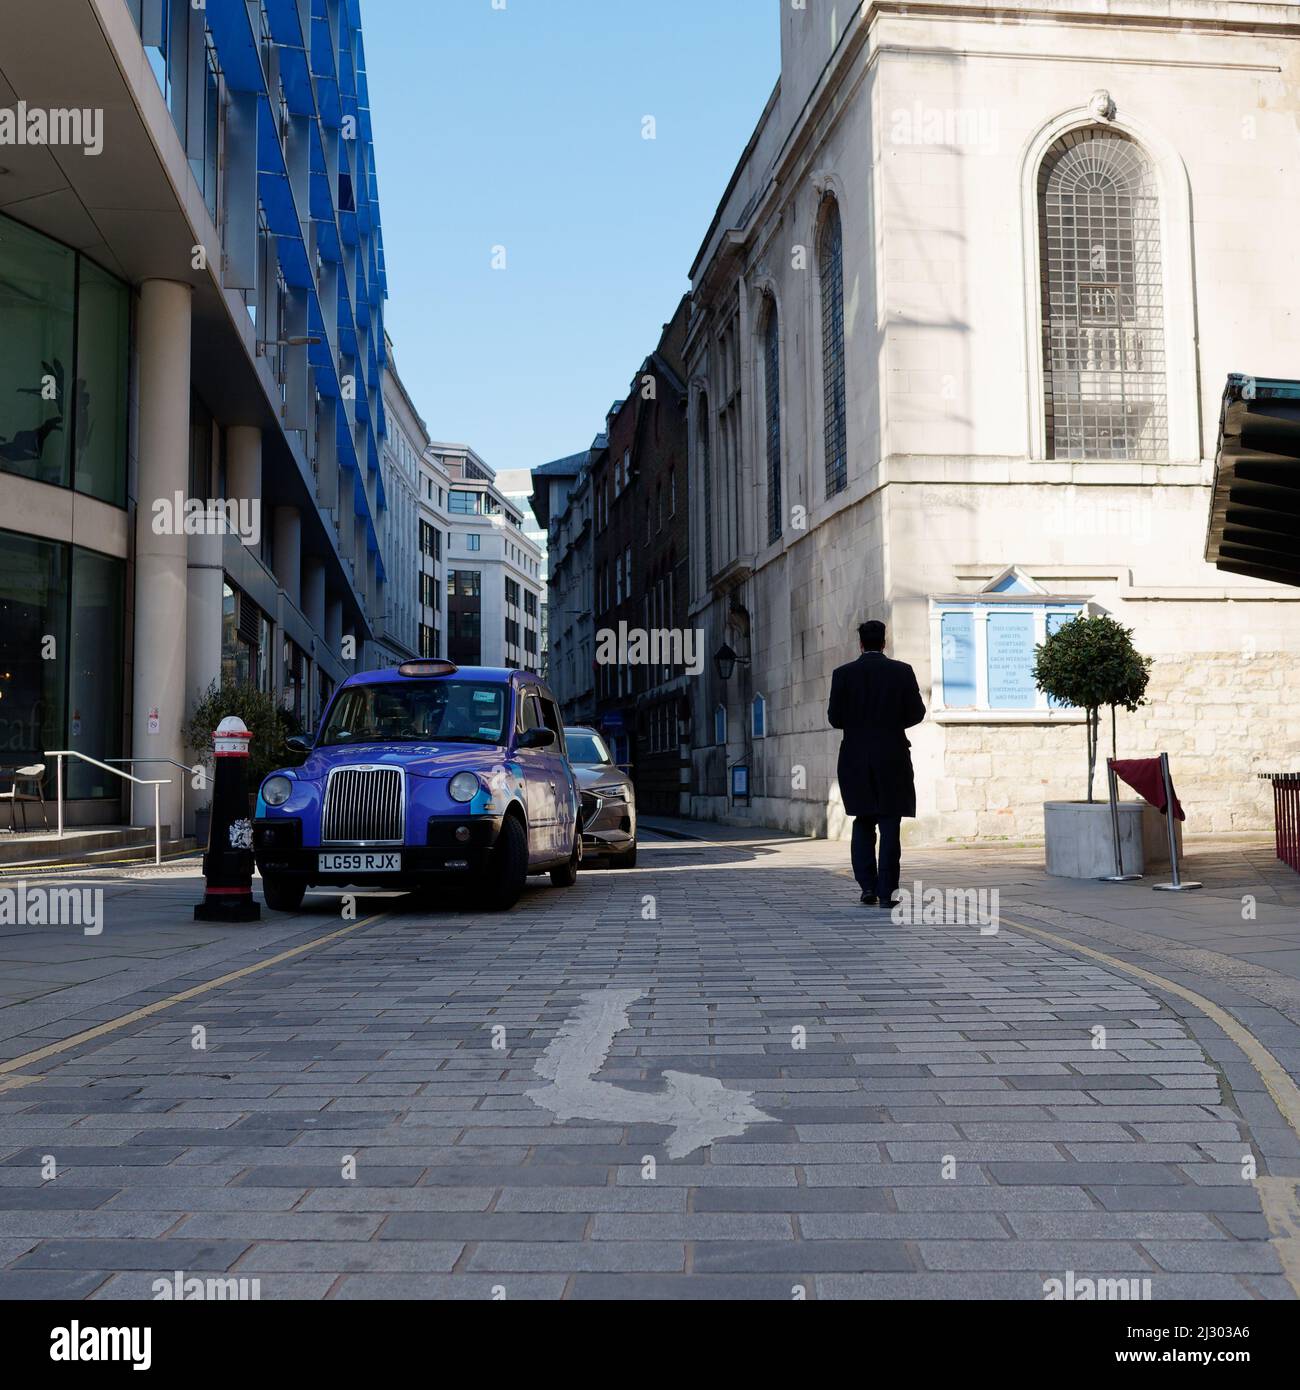 Londres, Grand Londres, Angleterre, mars 19 2022 : l'homme en silhouette marche à côté d'un taxi bleu dans la City de Londres. Road Sign en premier plan. Banque D'Images